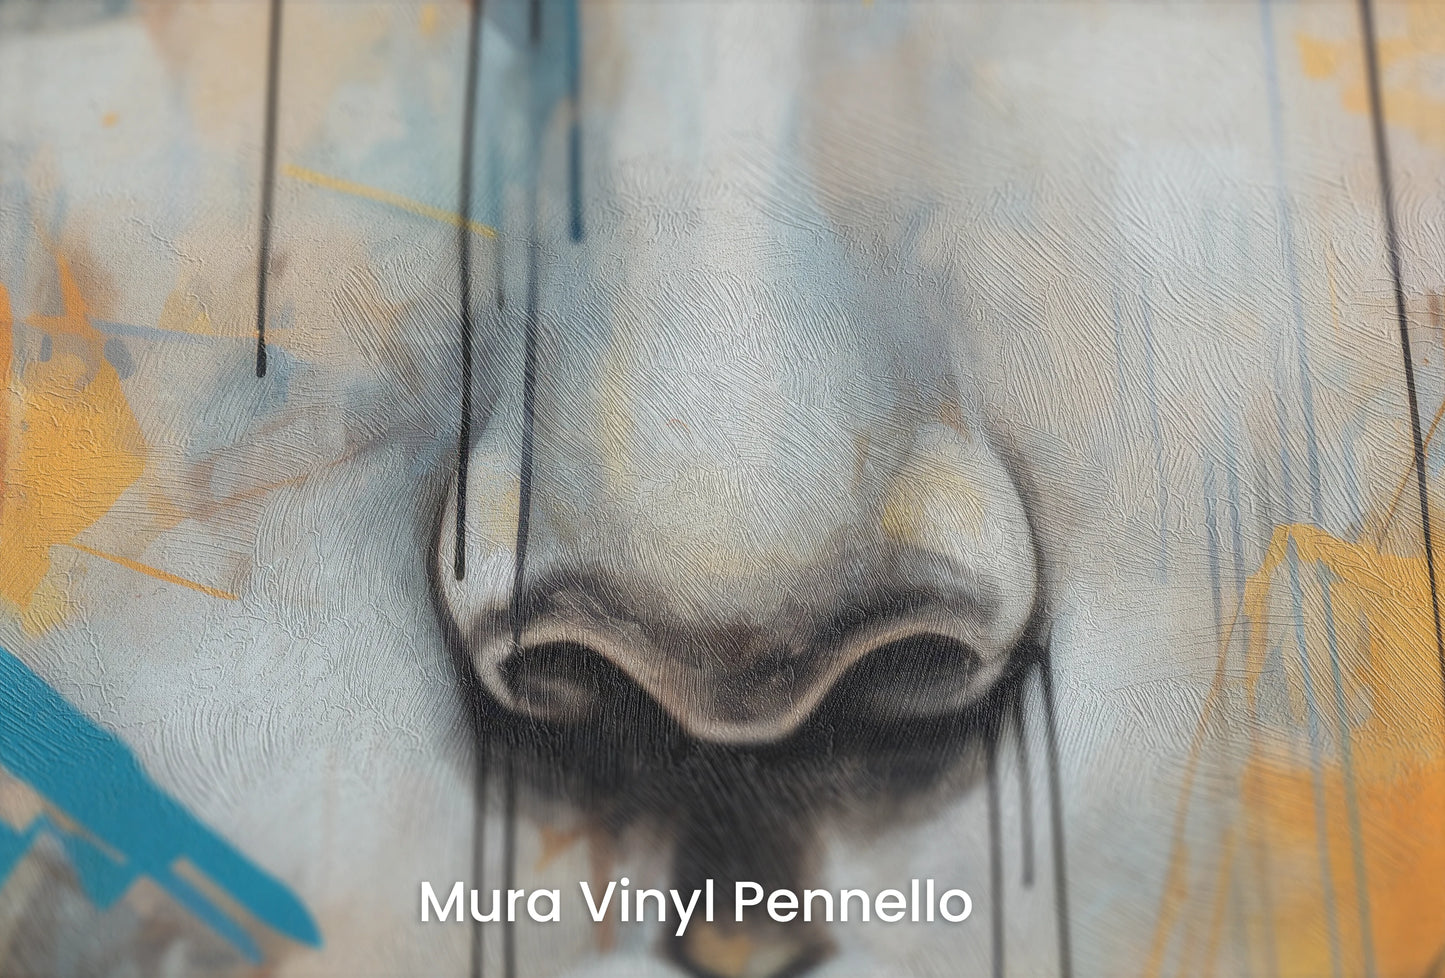 Zbliżenie na artystyczną fototapetę o nazwie Gaze of Times na podłożu Mura Vinyl Pennello - faktura pociągnięć pędzla malarskiego.